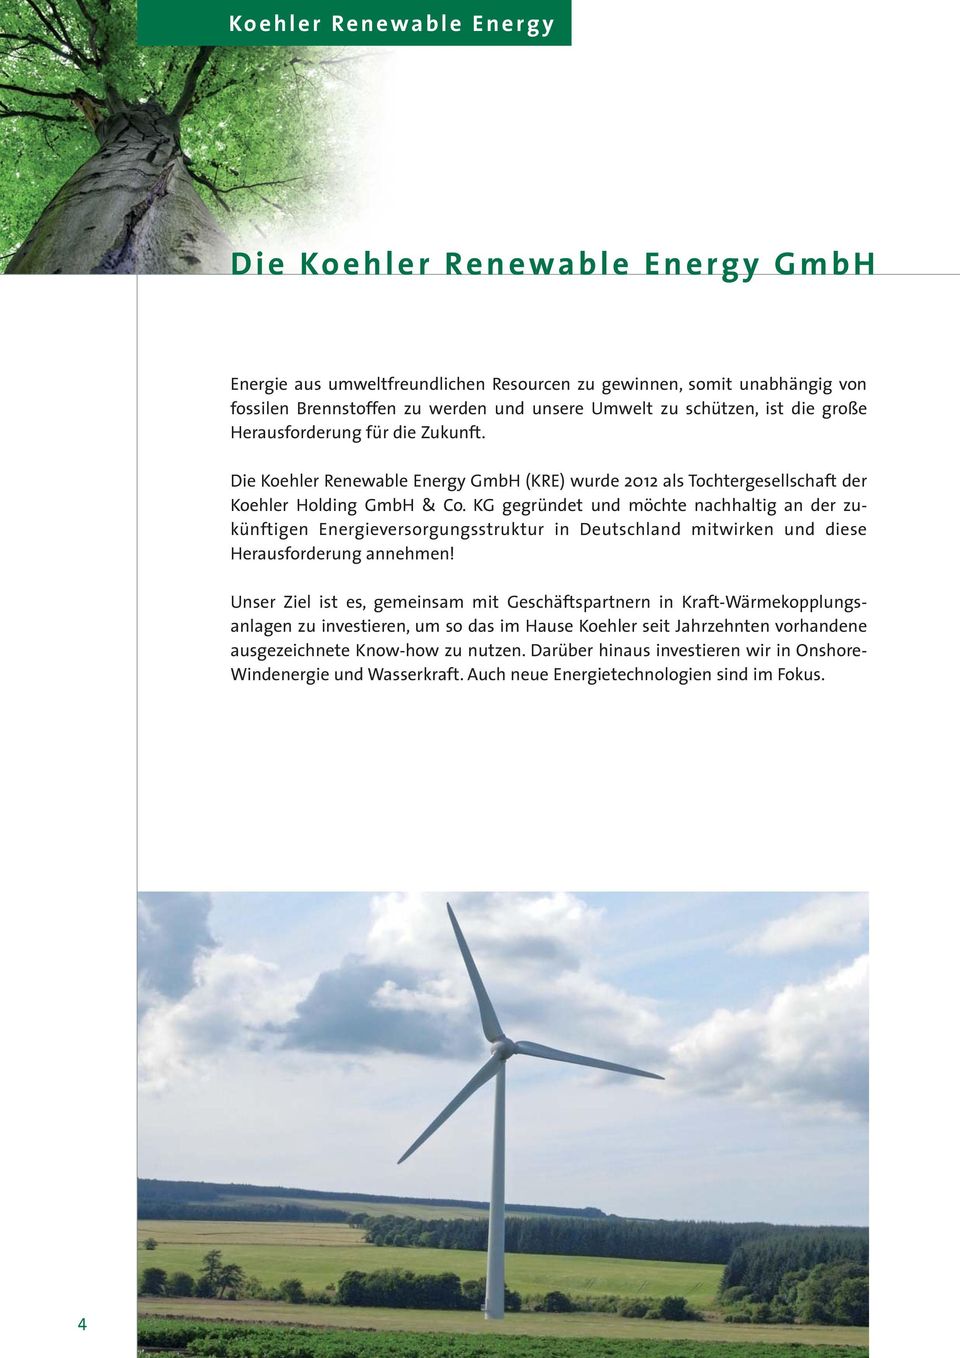 KG gegründet und möchte nachhaltig an der zu - künftigen Energieversorgungsstruktur in Deutschland mitwirken und diese Herausforderung annehmen!